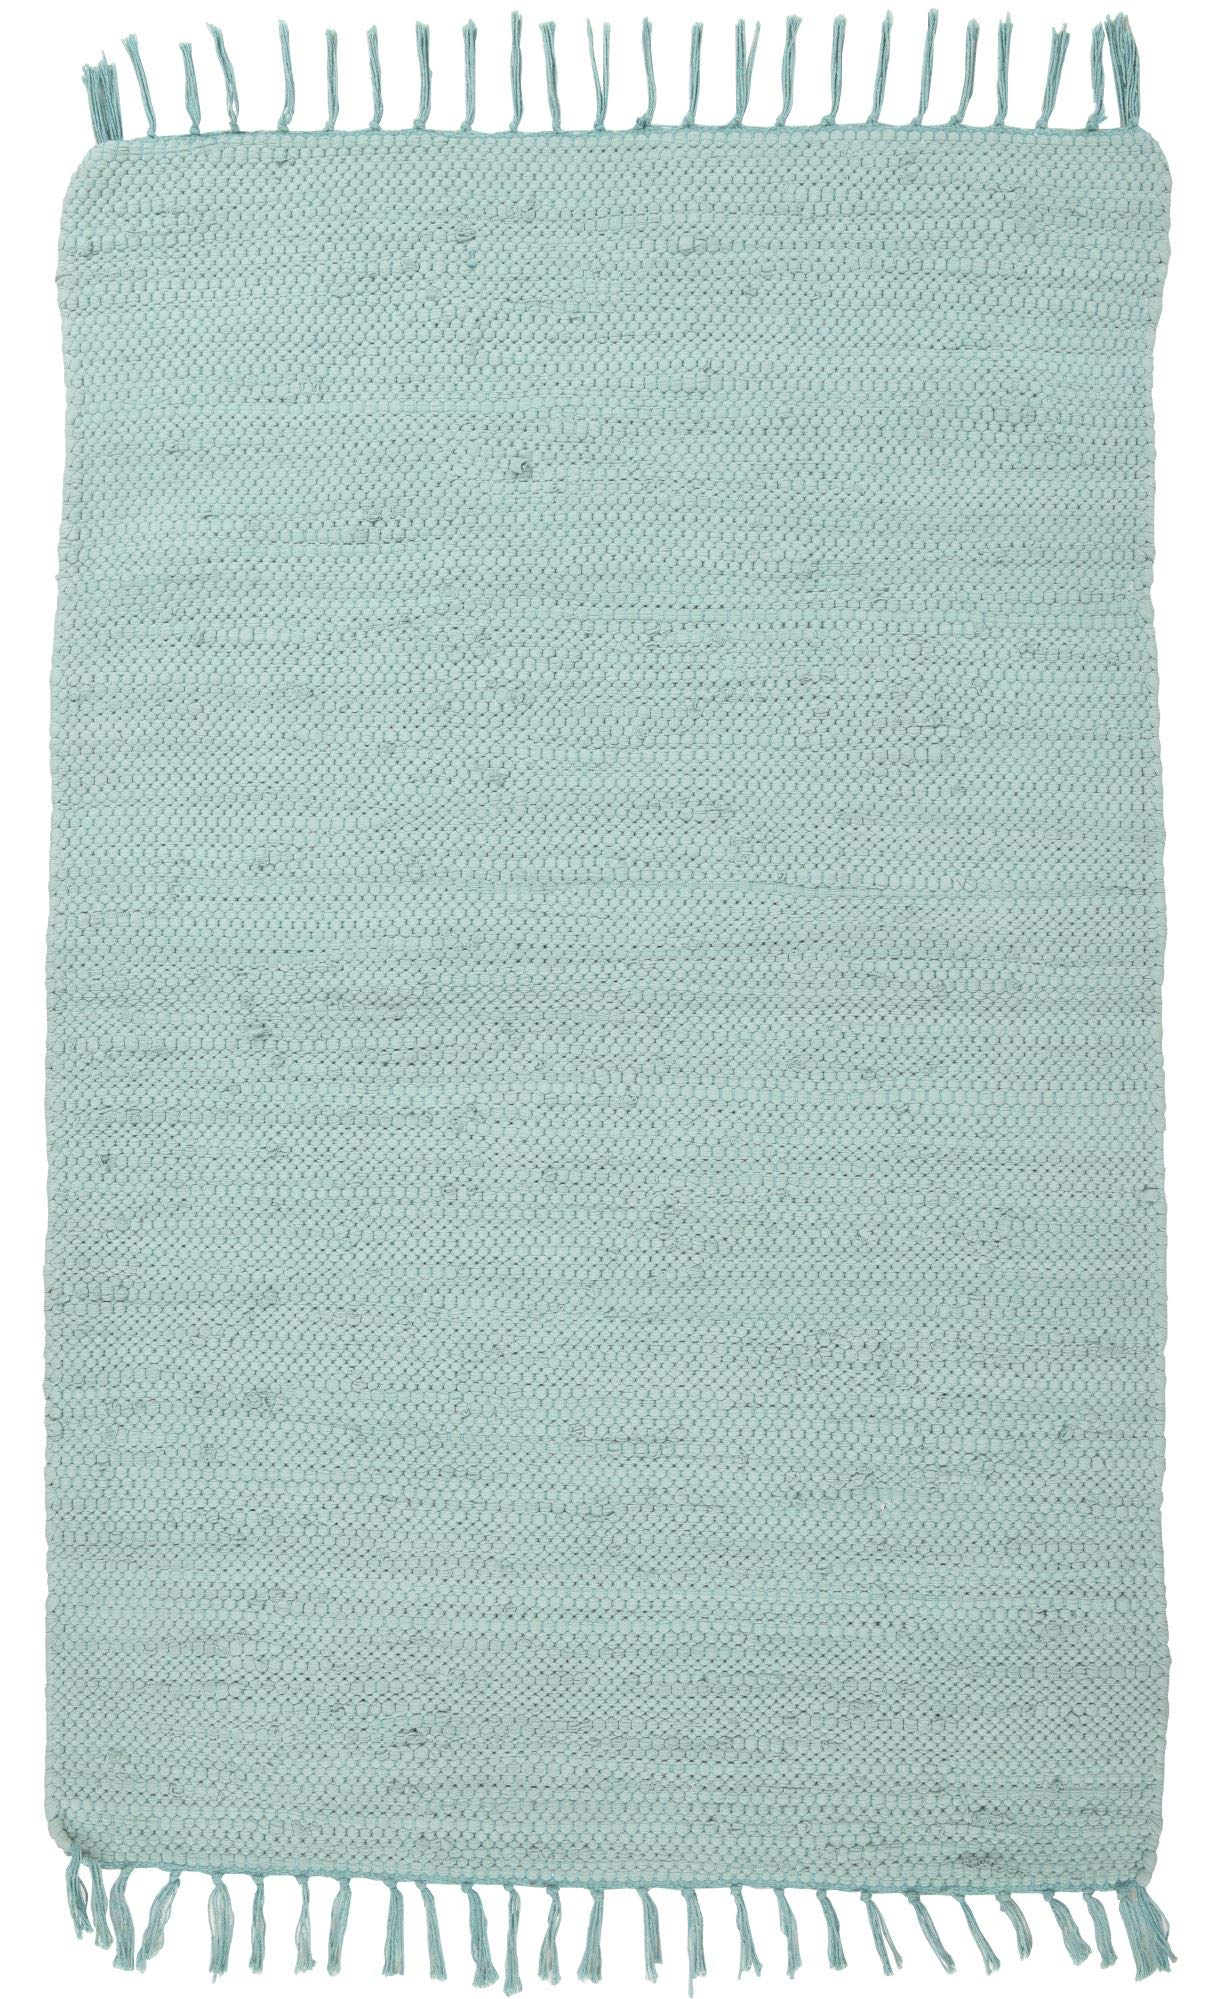 THEKO | Dhurry Teppich aus 100% Baumwolle Flachgewebe Teppich Happy Cotton | handgewebt | Farbe: Mint | 160x230 cm